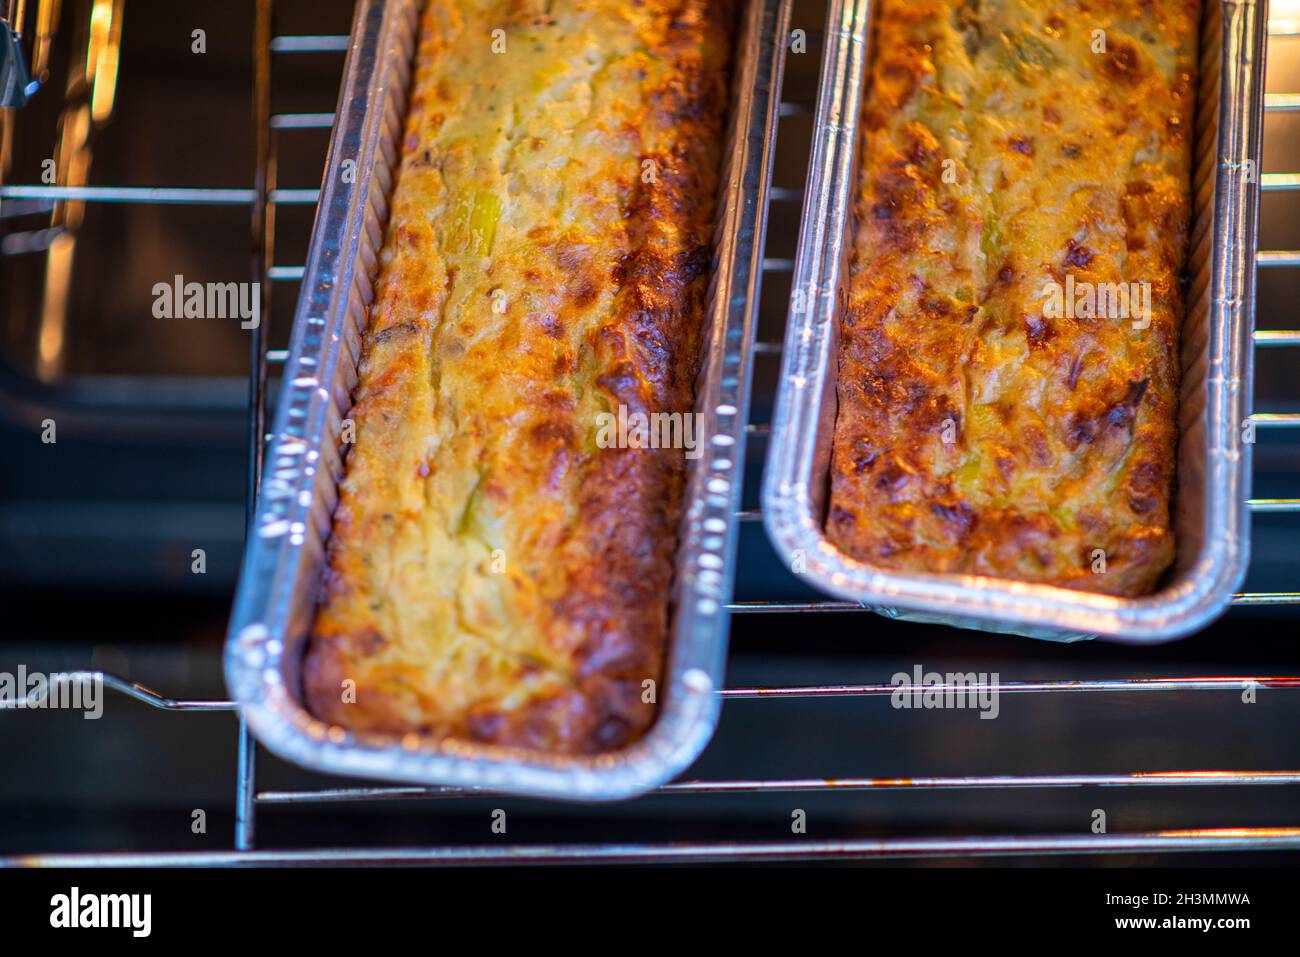 Torta di verdure con peperoni arrostiti in cima. Due stampi quiche nel forno. Cibo sano fatto in casa. Foto di alta qualità Foto Stock